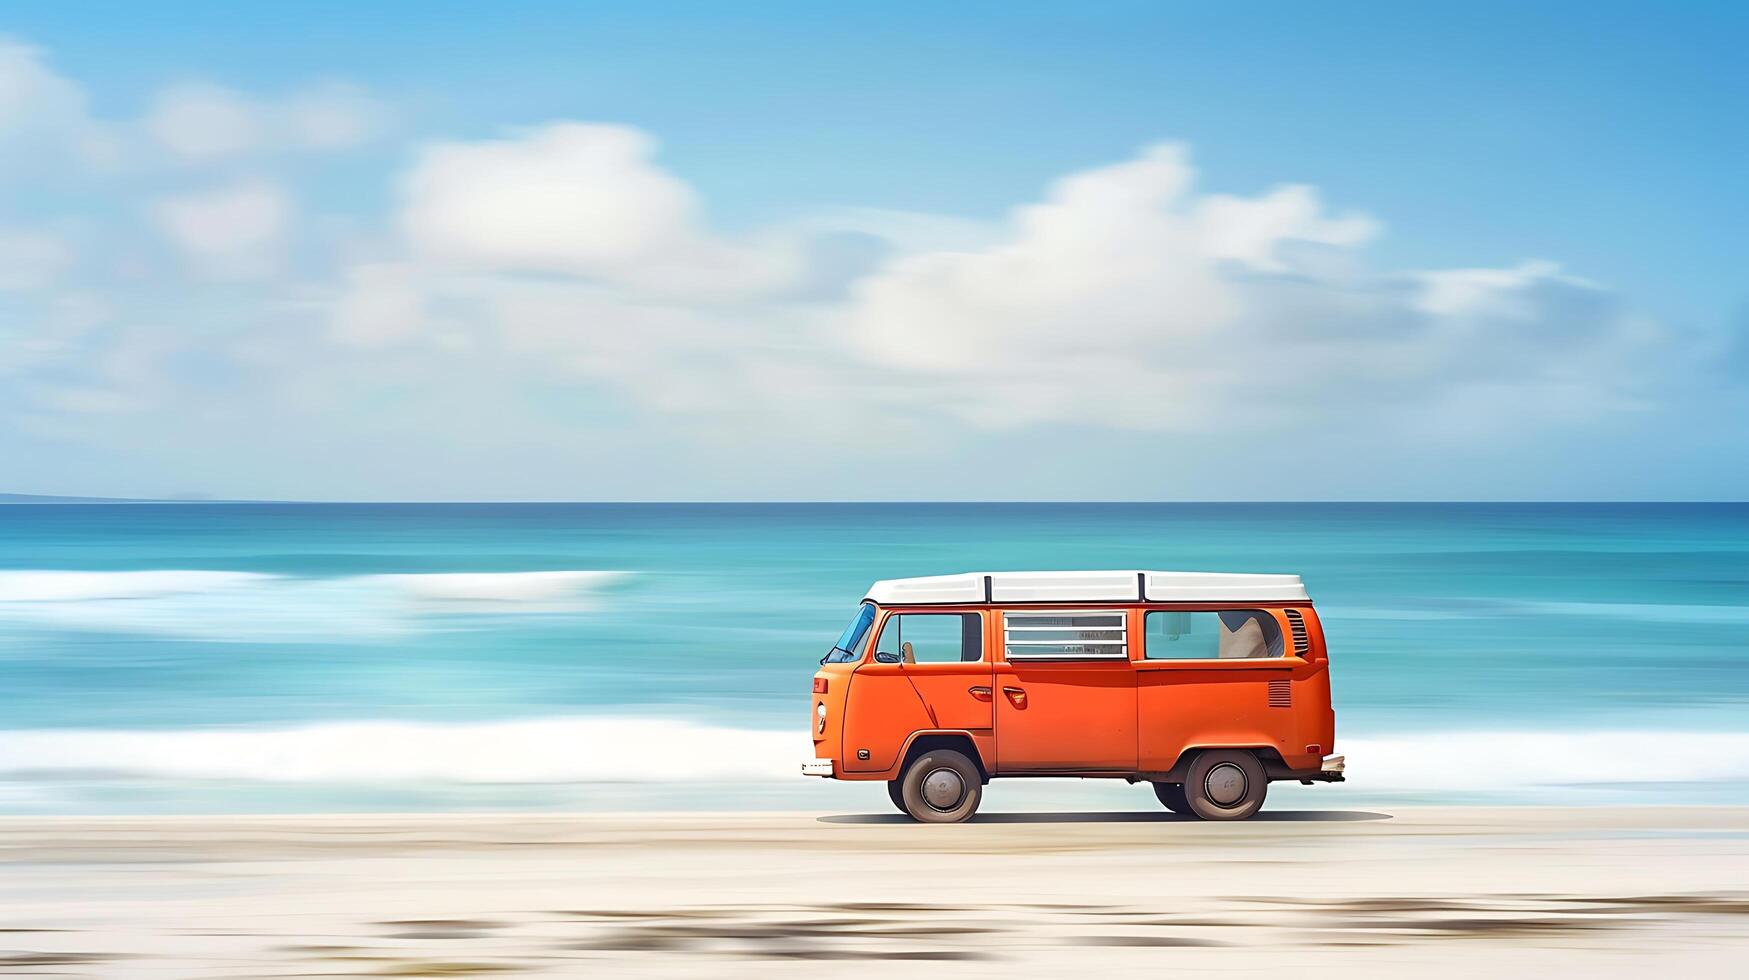 naranja camioneta en el playa con mar y azul cielo fondo, pinturas un pacífico escena. foto